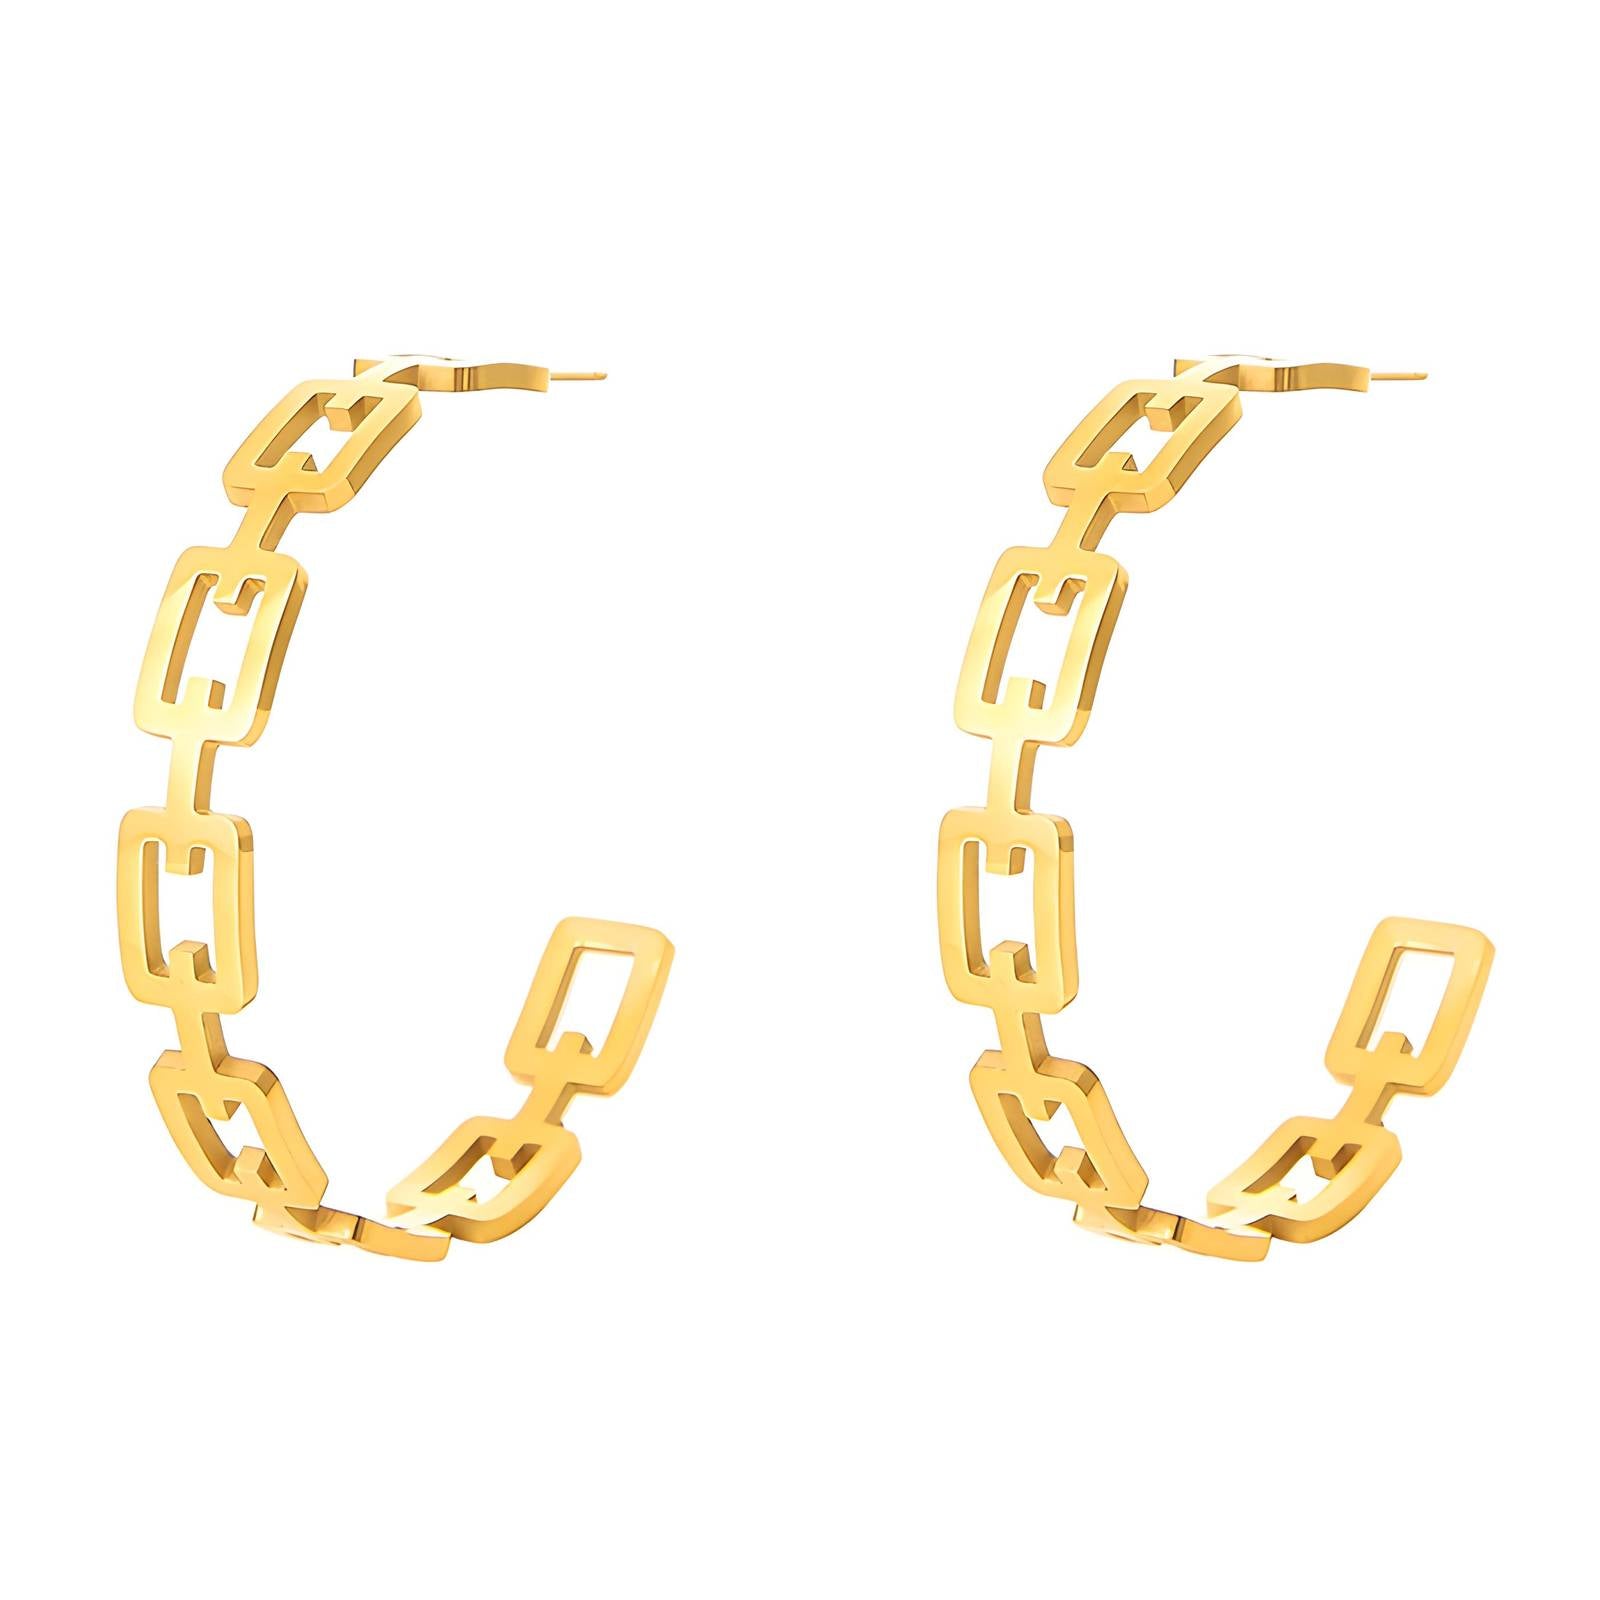 Chain Link Hoop Earrings